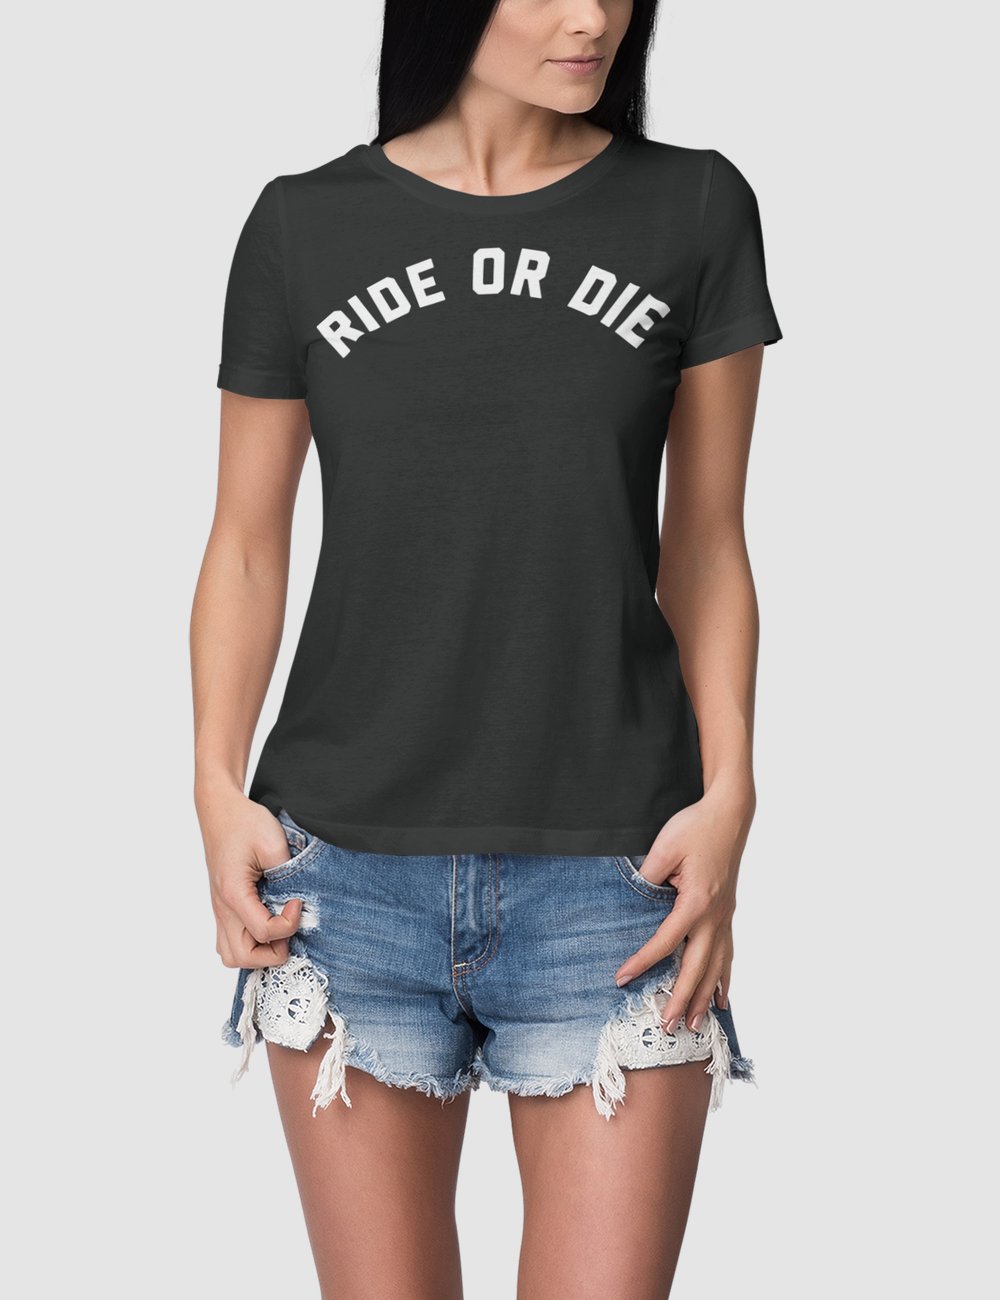 Ride Or Die Women's Classic T-Shirt OniTakai